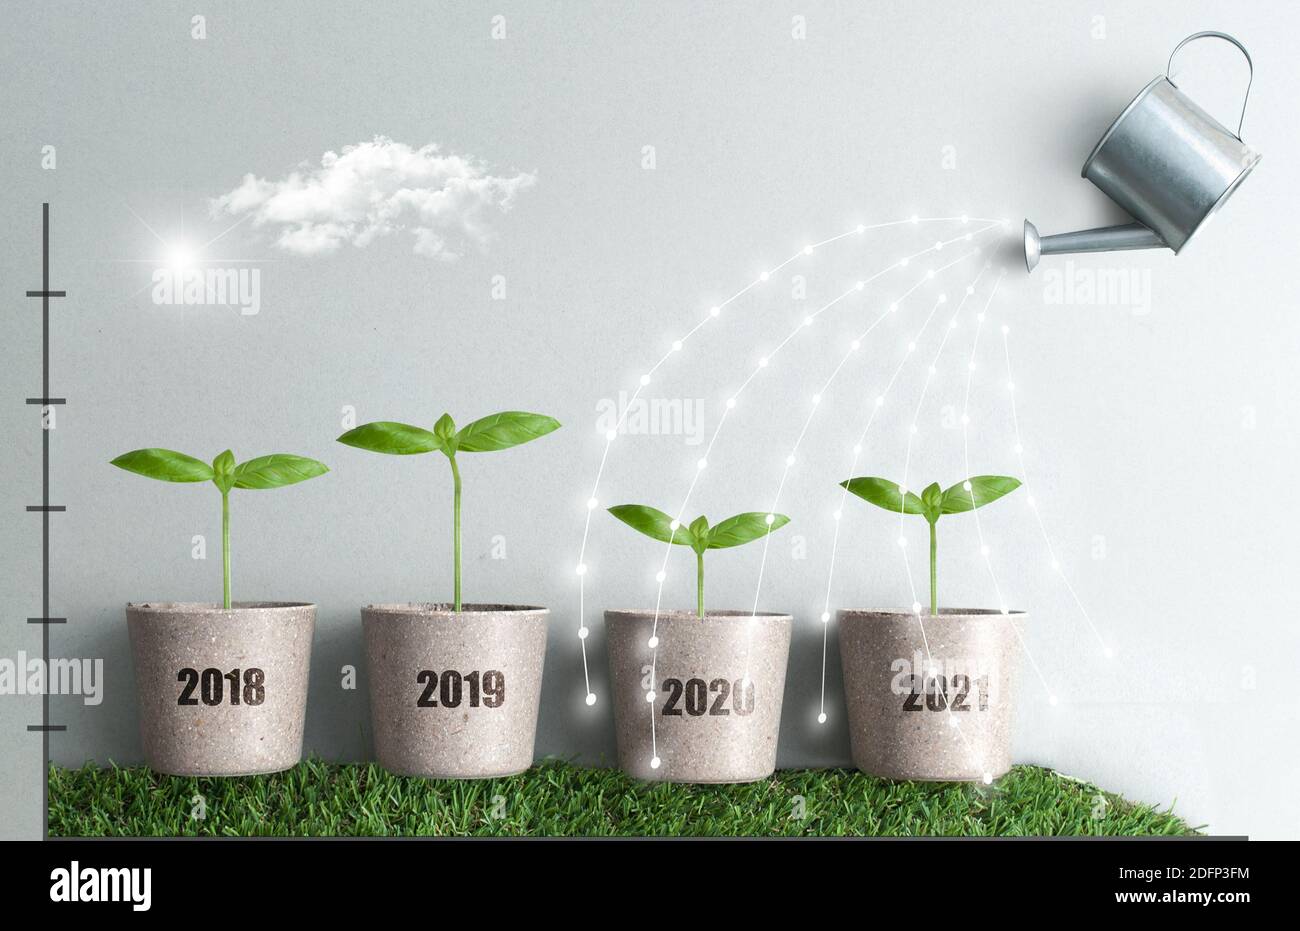 Concept de comparaison de la croissance des affaires année par année de 2018 à 2021, de nouveaux semis dans des pots de plantes sont arrosées de flux de lumière Banque D'Images